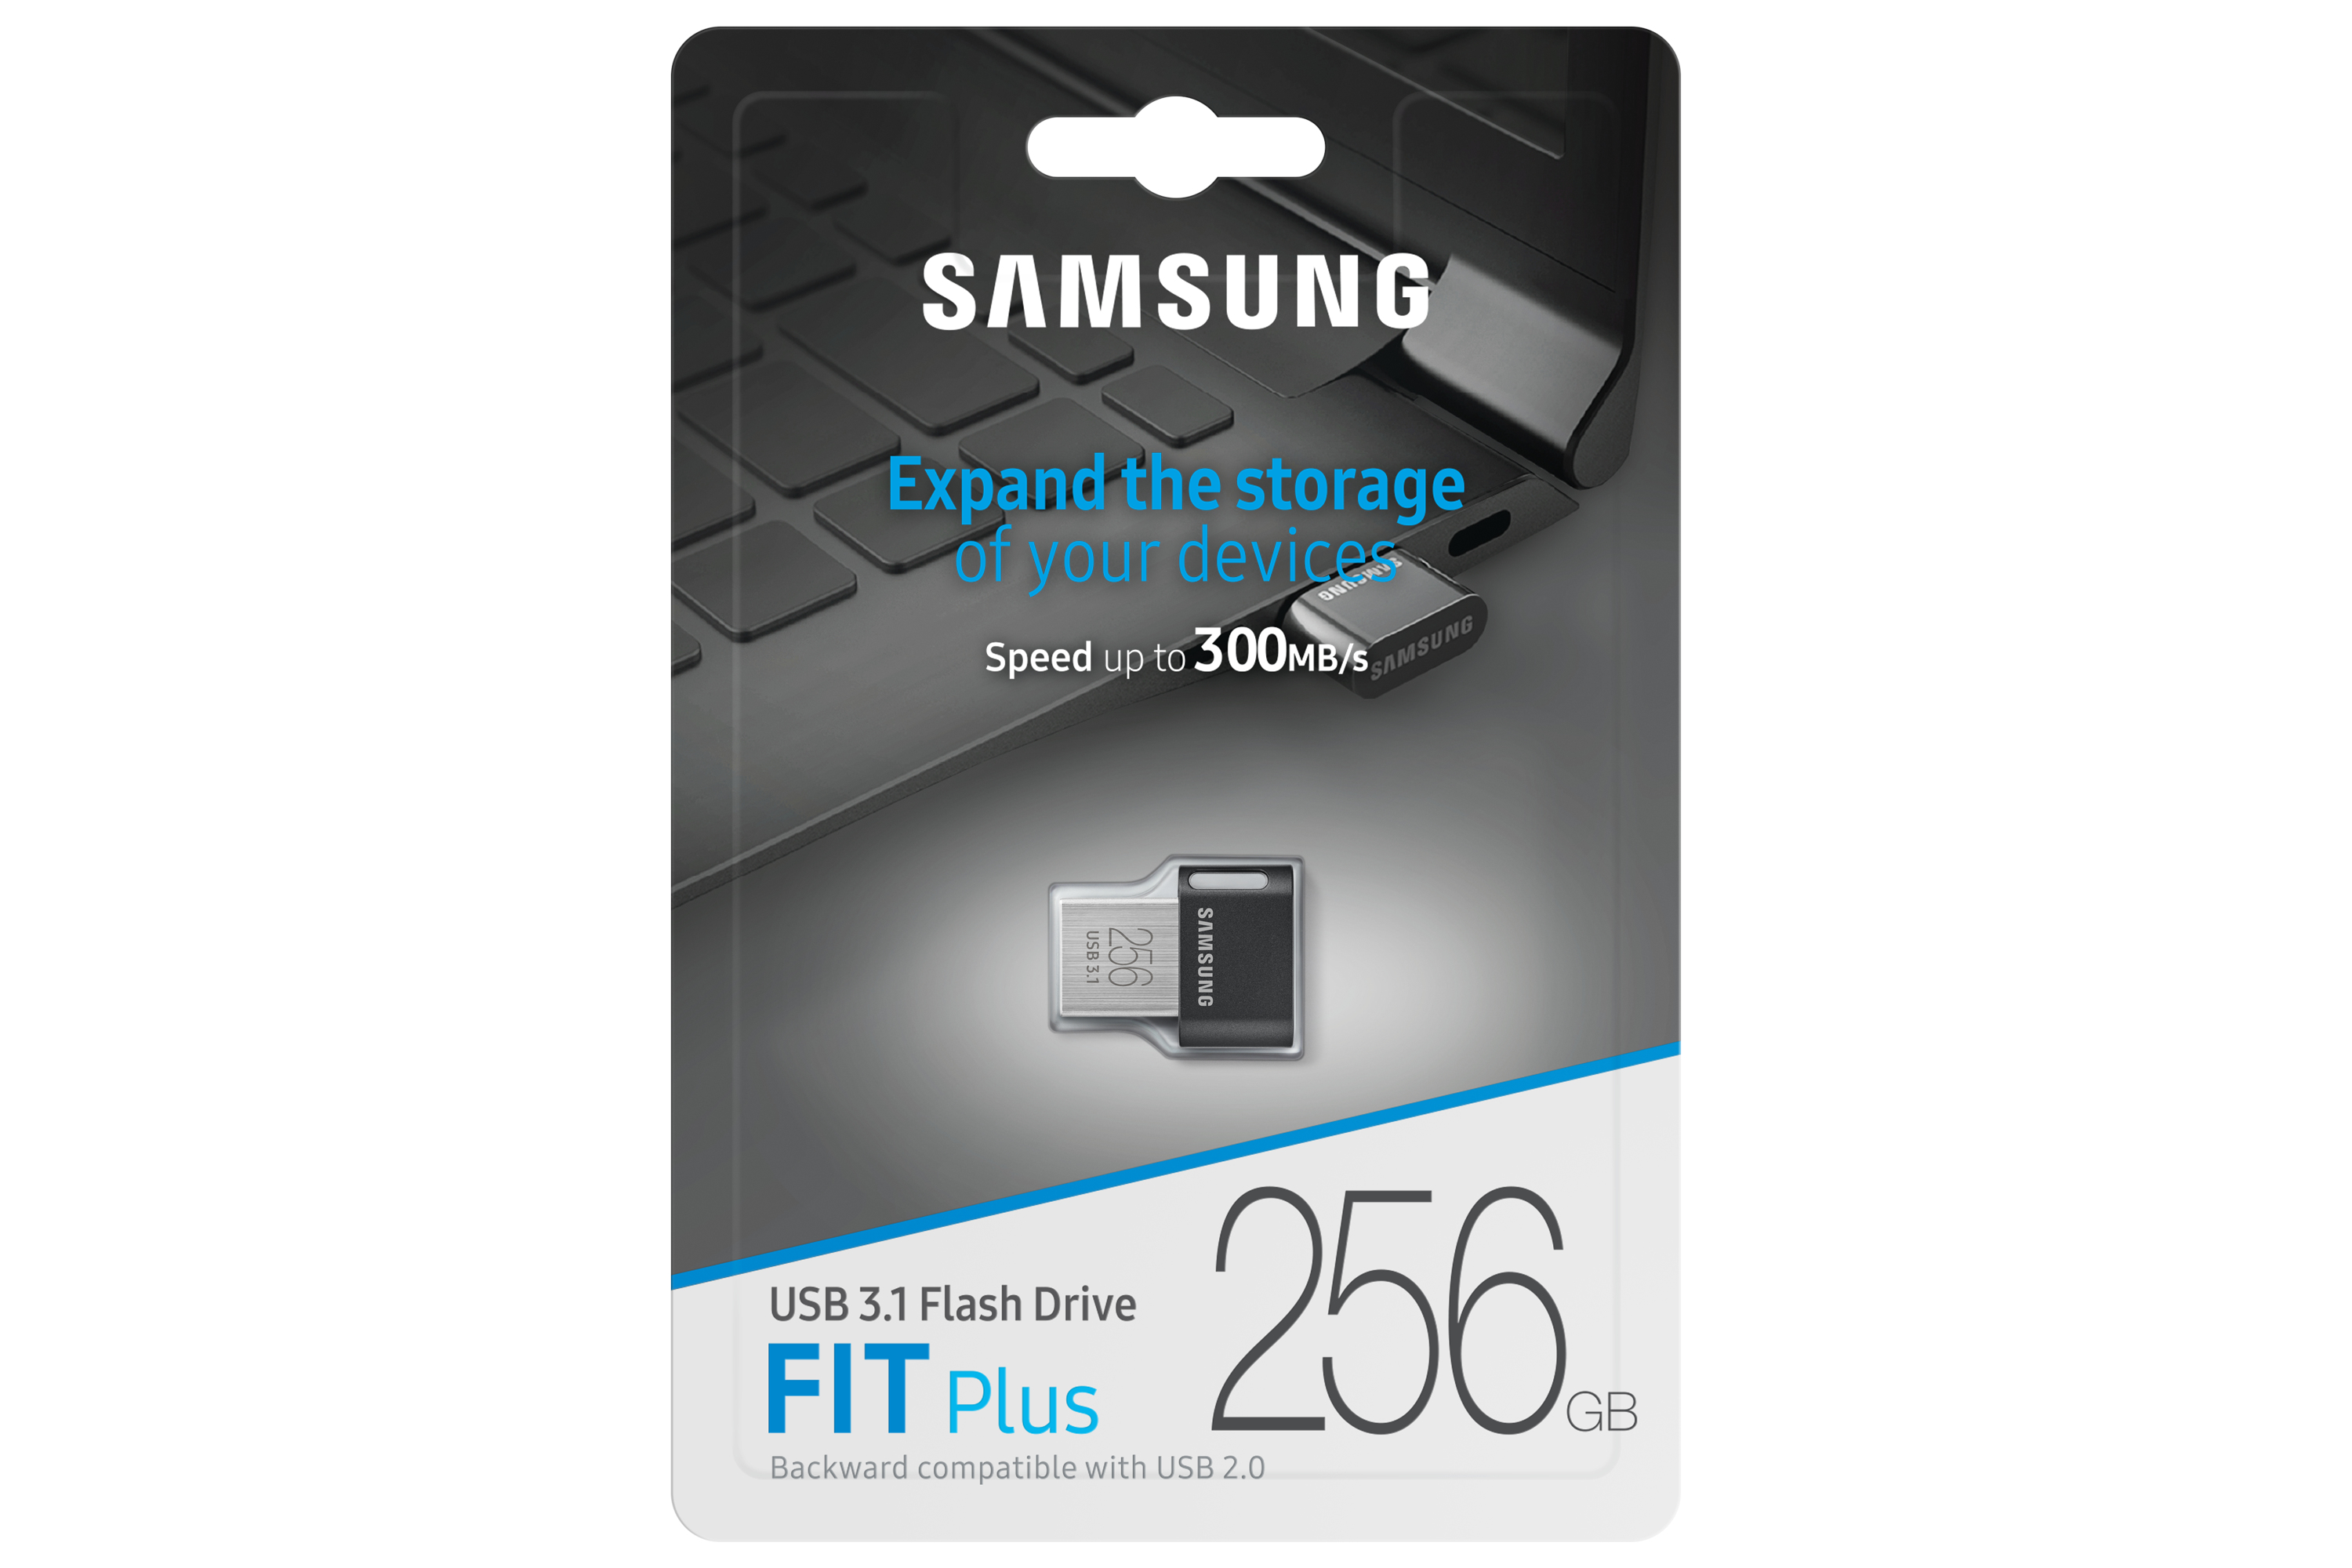 USB GEAR FIT PLUS 256GB